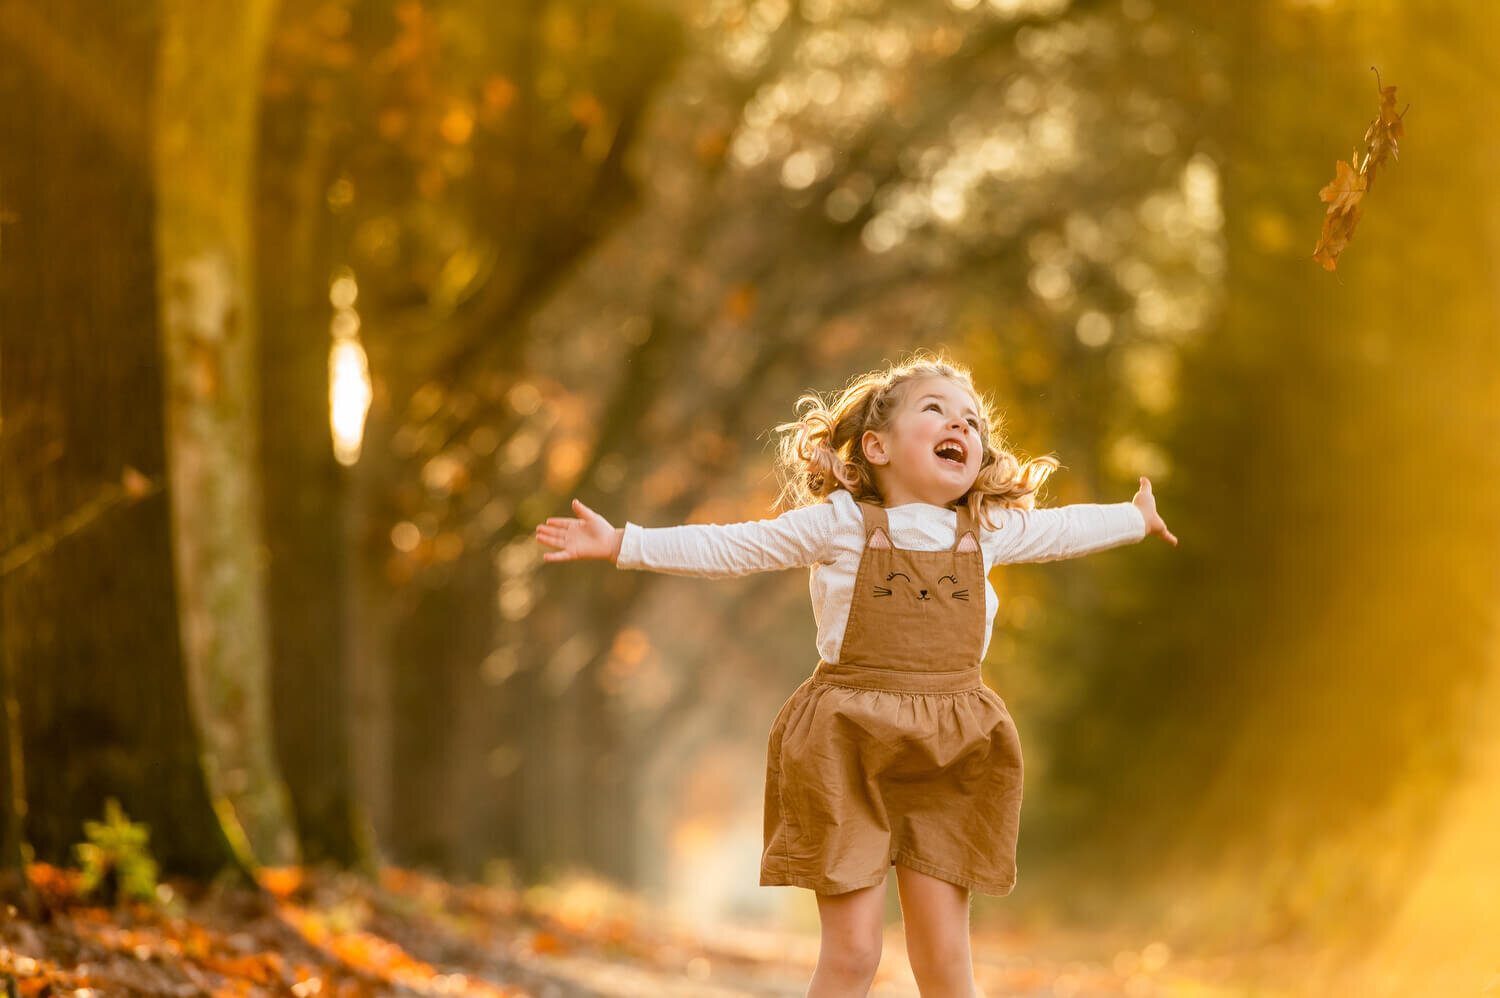 Herfstshoot met bladeren, zonnestralen en een vrolijk meisje